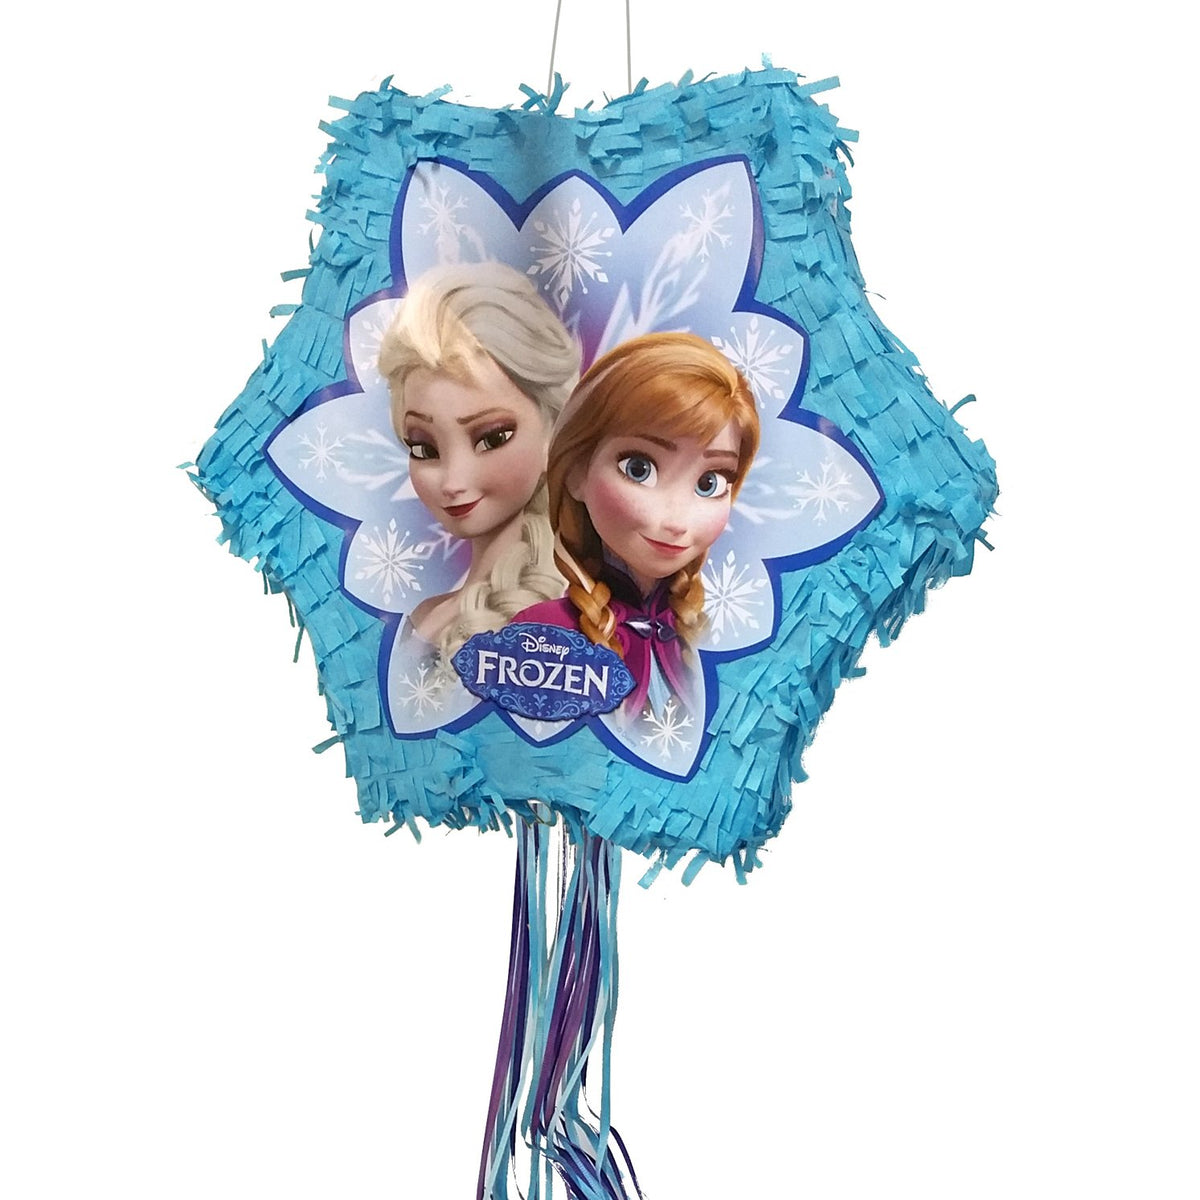 Piñata Frozen 2❄🍁🏵 . #reinaelsa #princesaana #elsayana #frozen #disney  #piñatalu #pinatalu #chile #santiago #cerrillos #maipu…